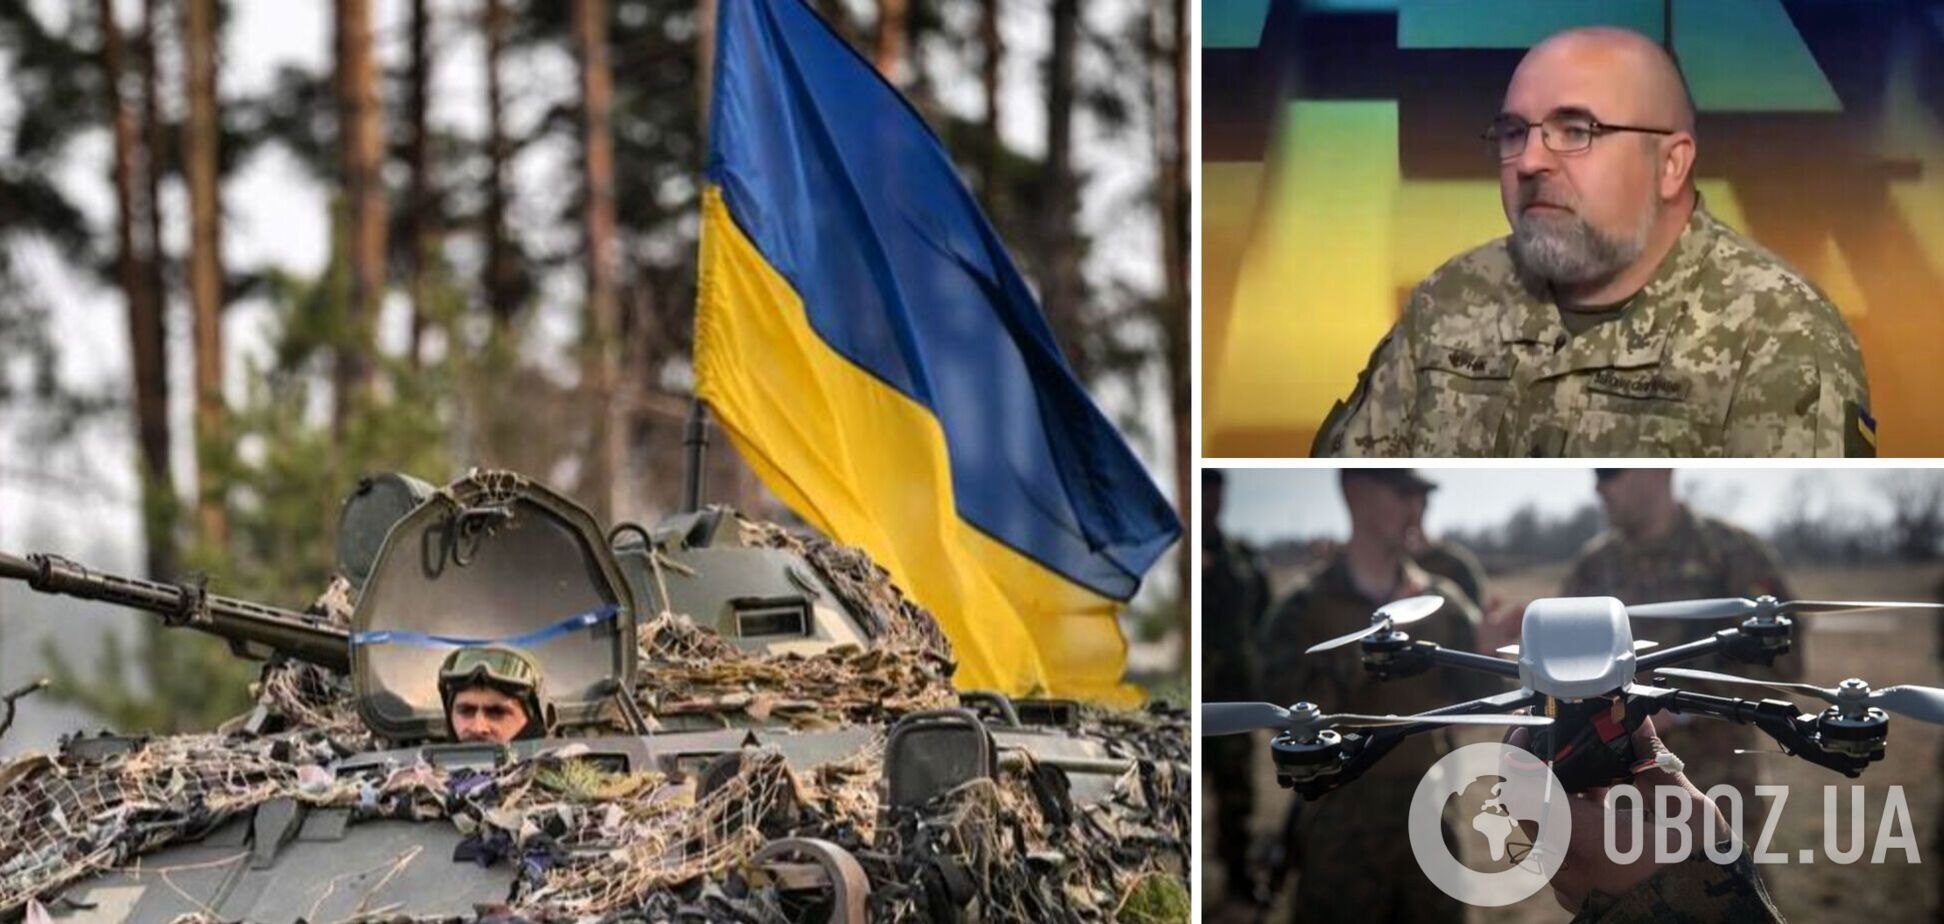 Полковник Черник: небо Украины защитят лучше, есть предпосылки для перелома в войне. Интервью